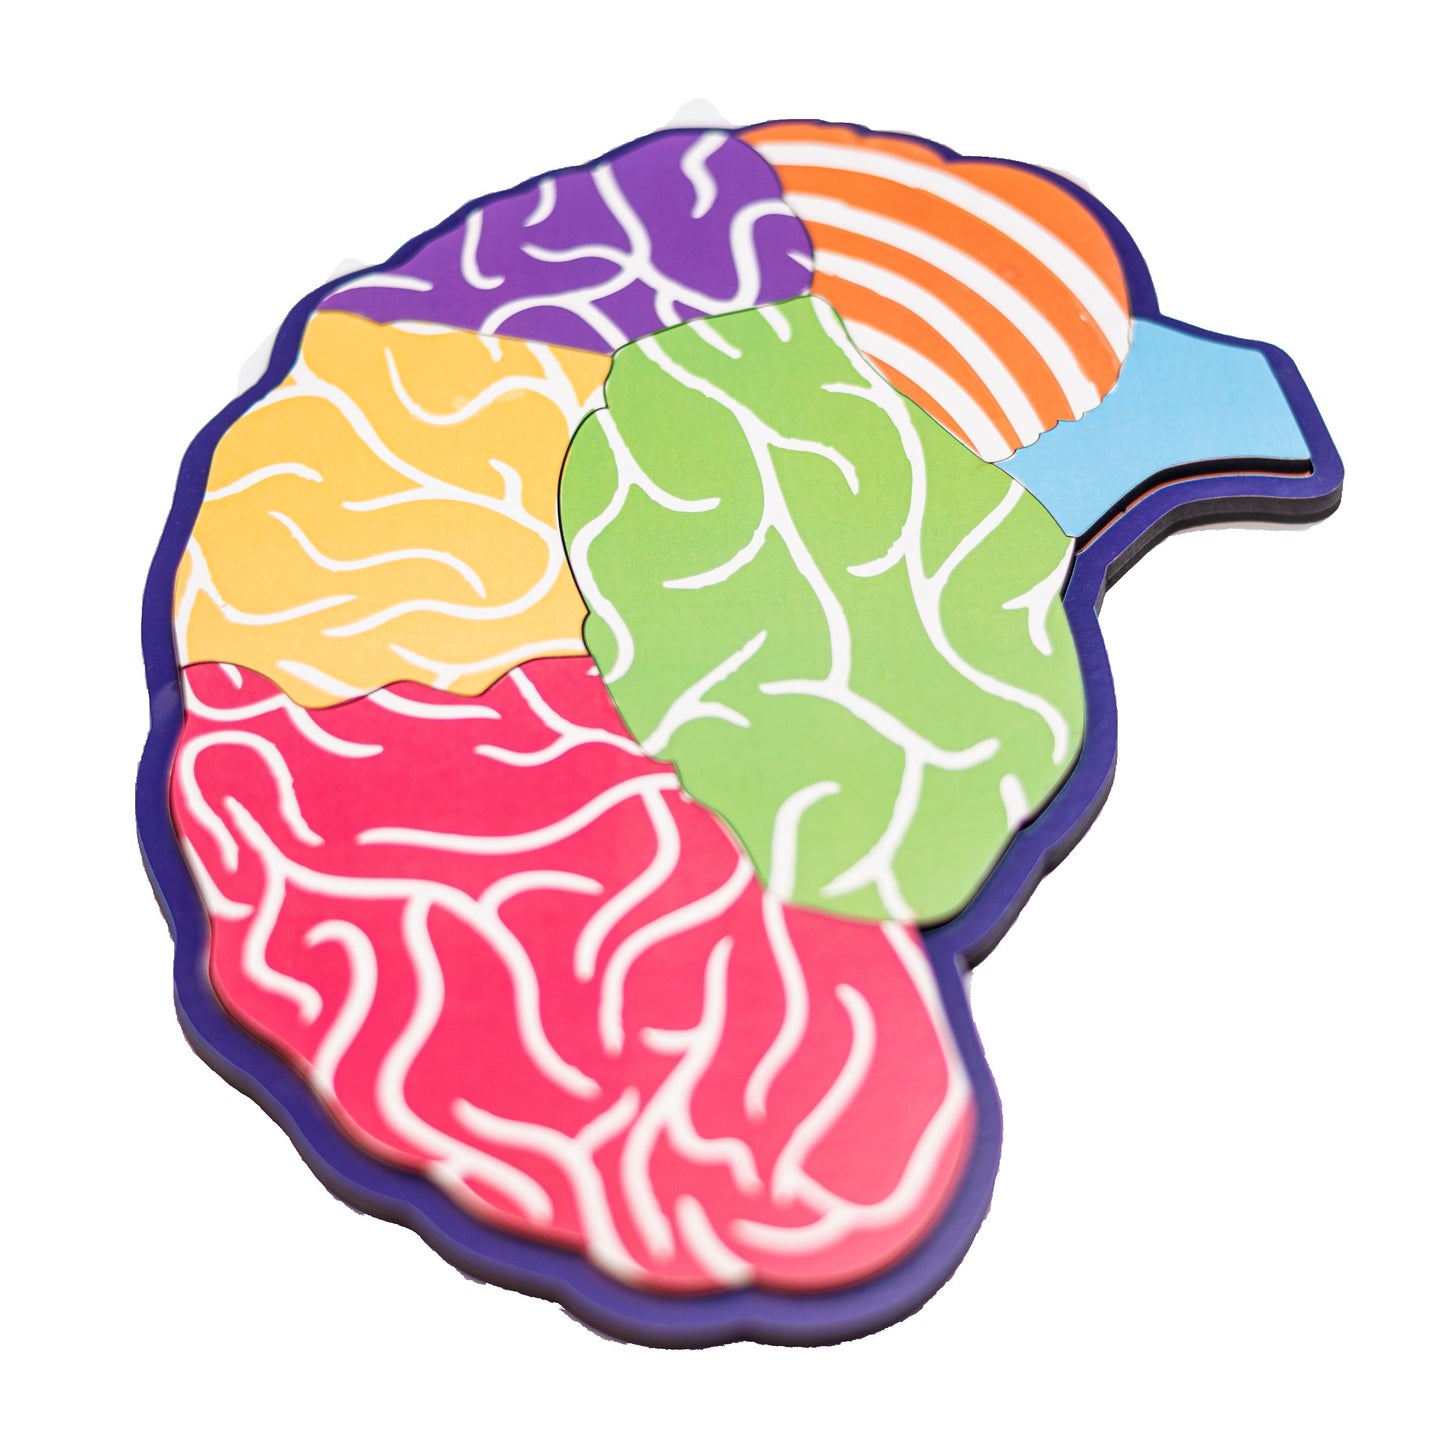 Anatomy of Brain Learning Board